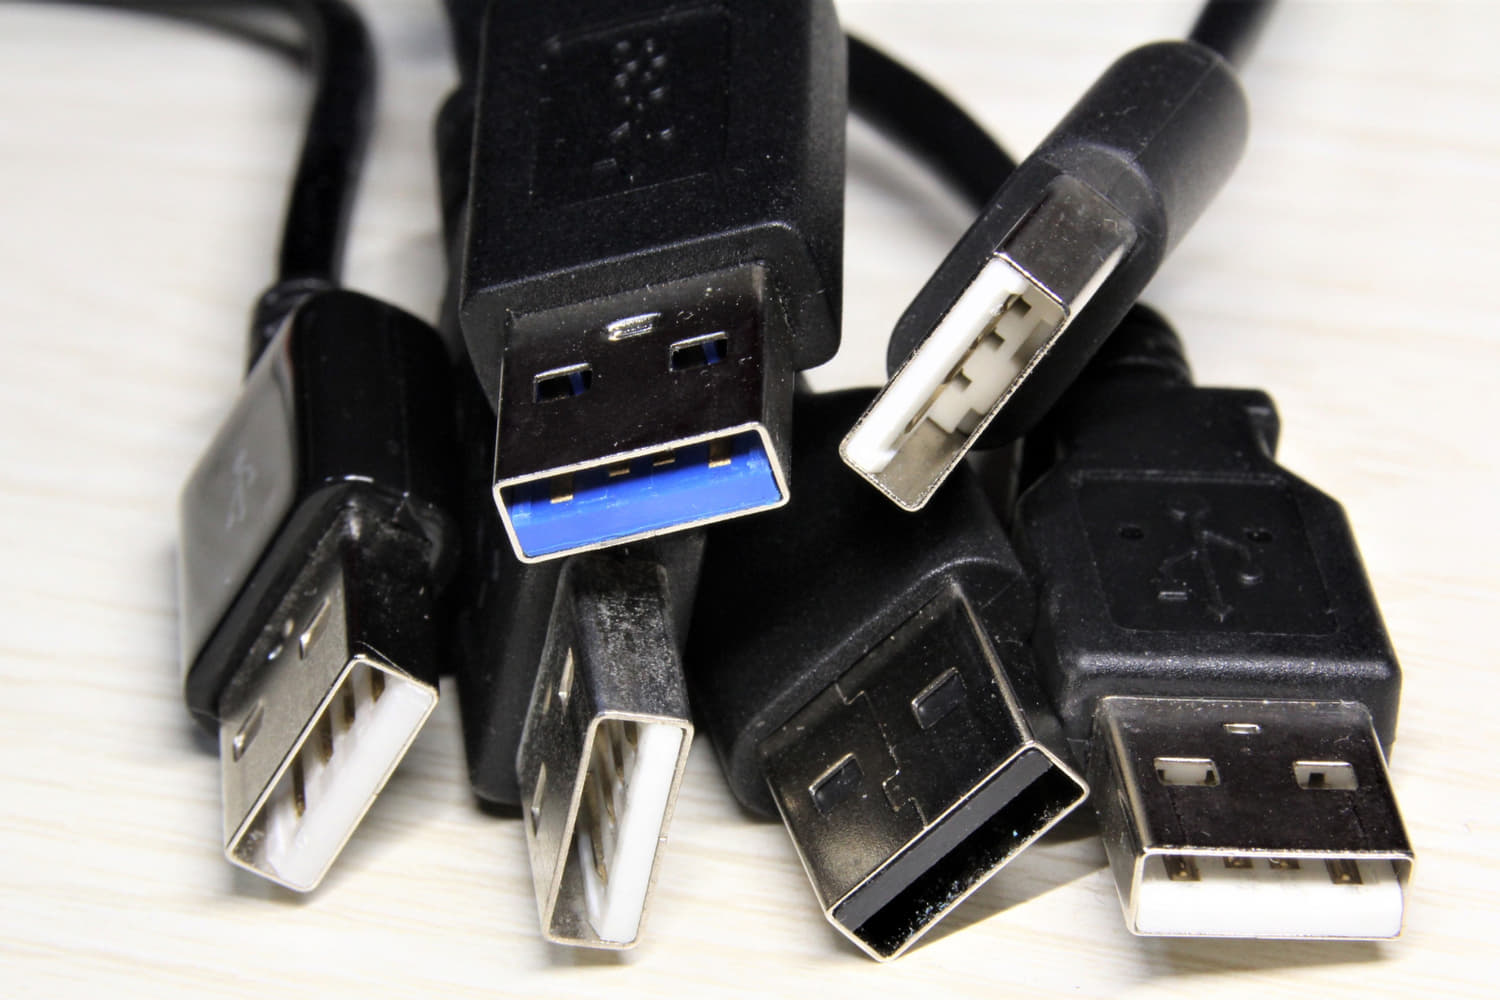 見分け方は、USB2.0は端子の色が白か黒、USB3.0は青になっている